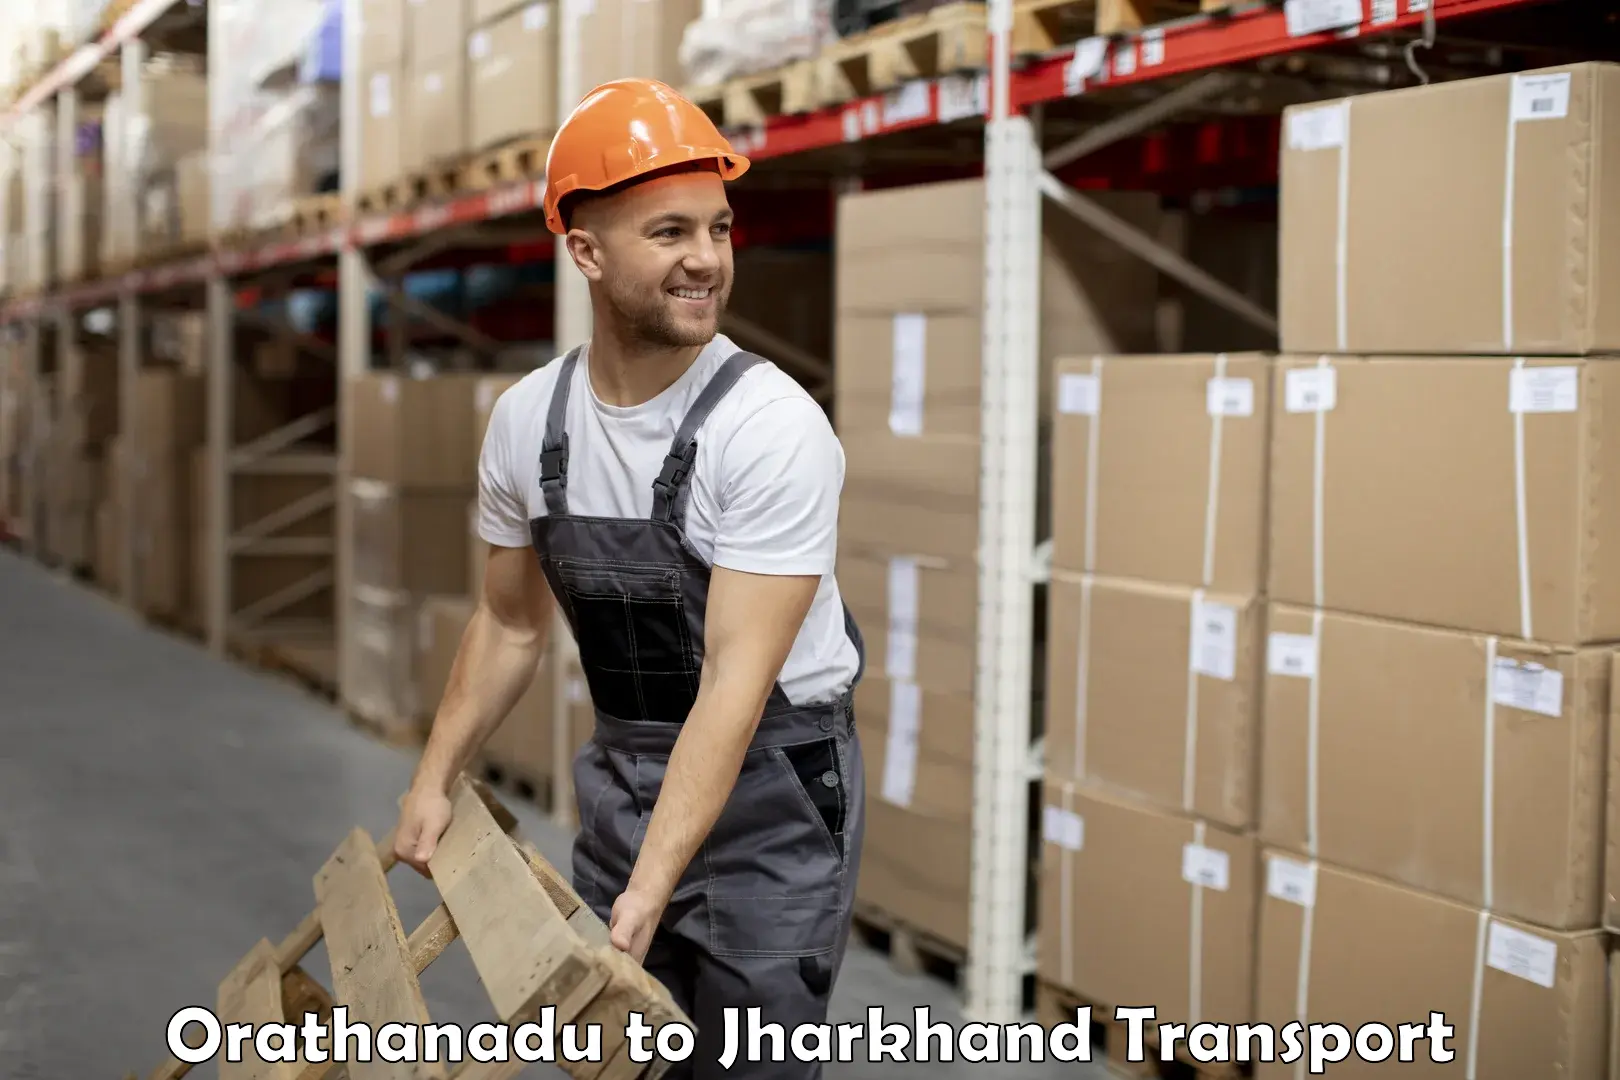 Cargo transportation services Orathanadu to Medininagar